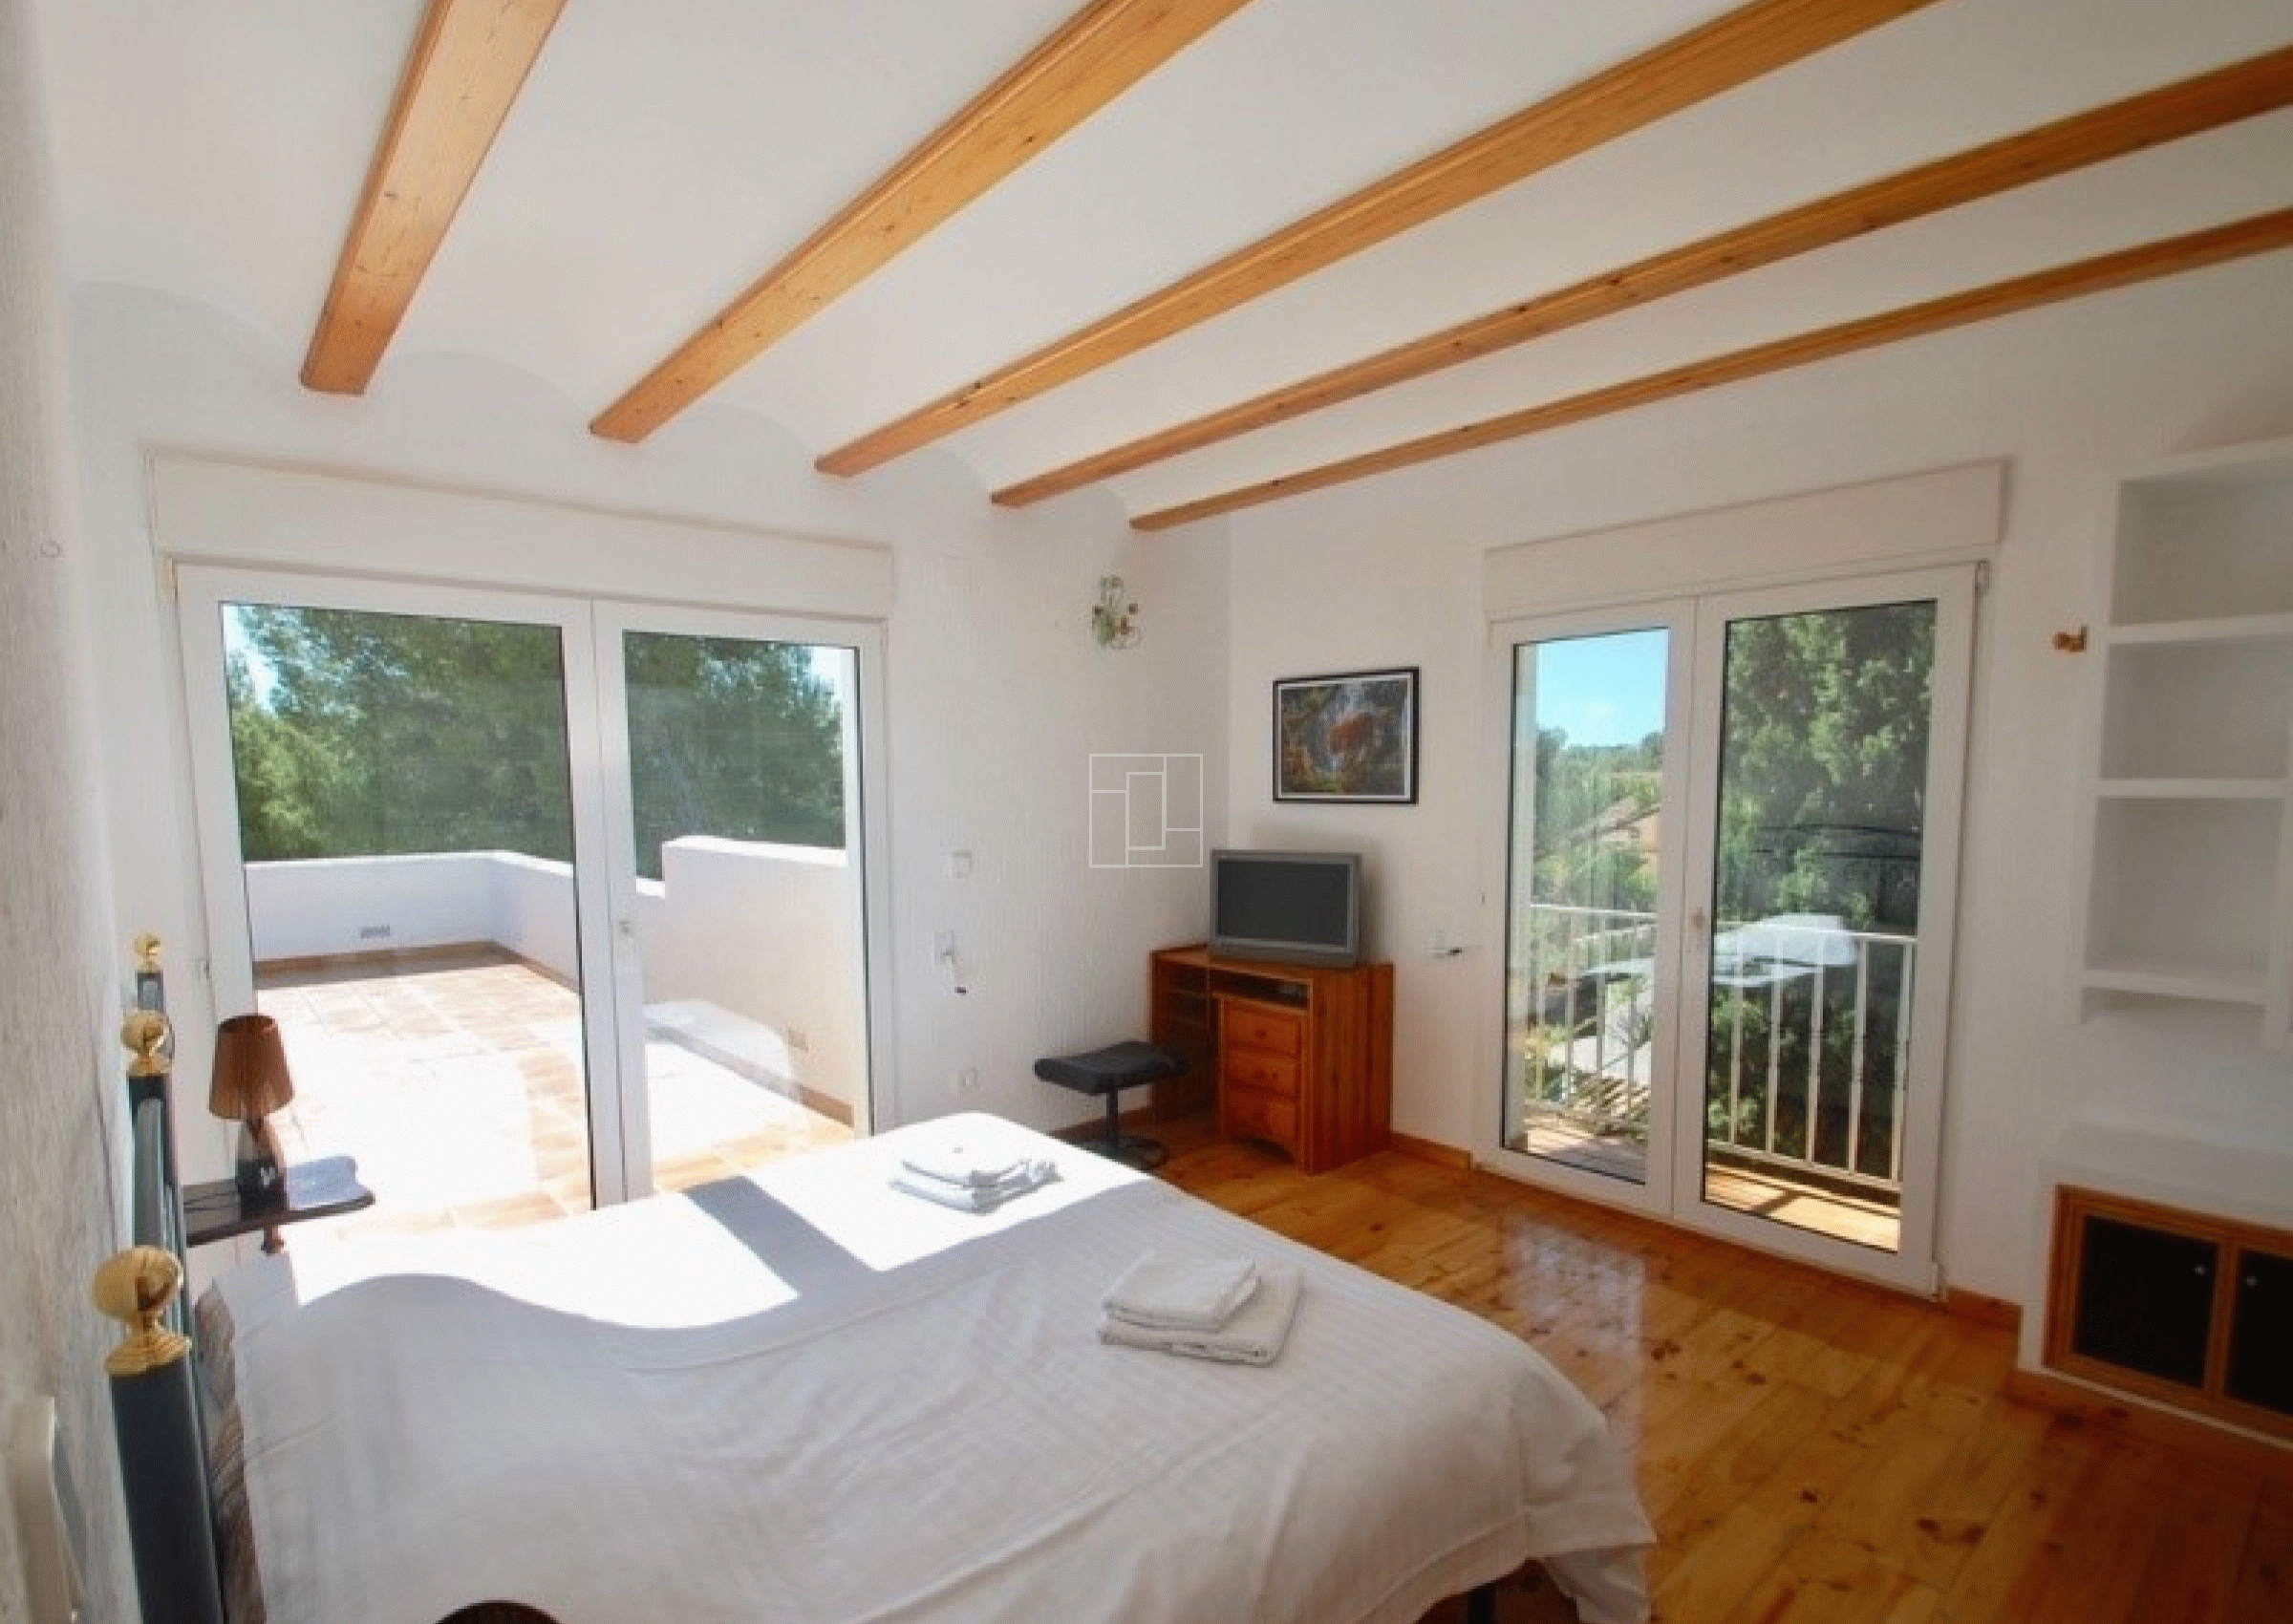 Spacious 5 bed villa with sea views